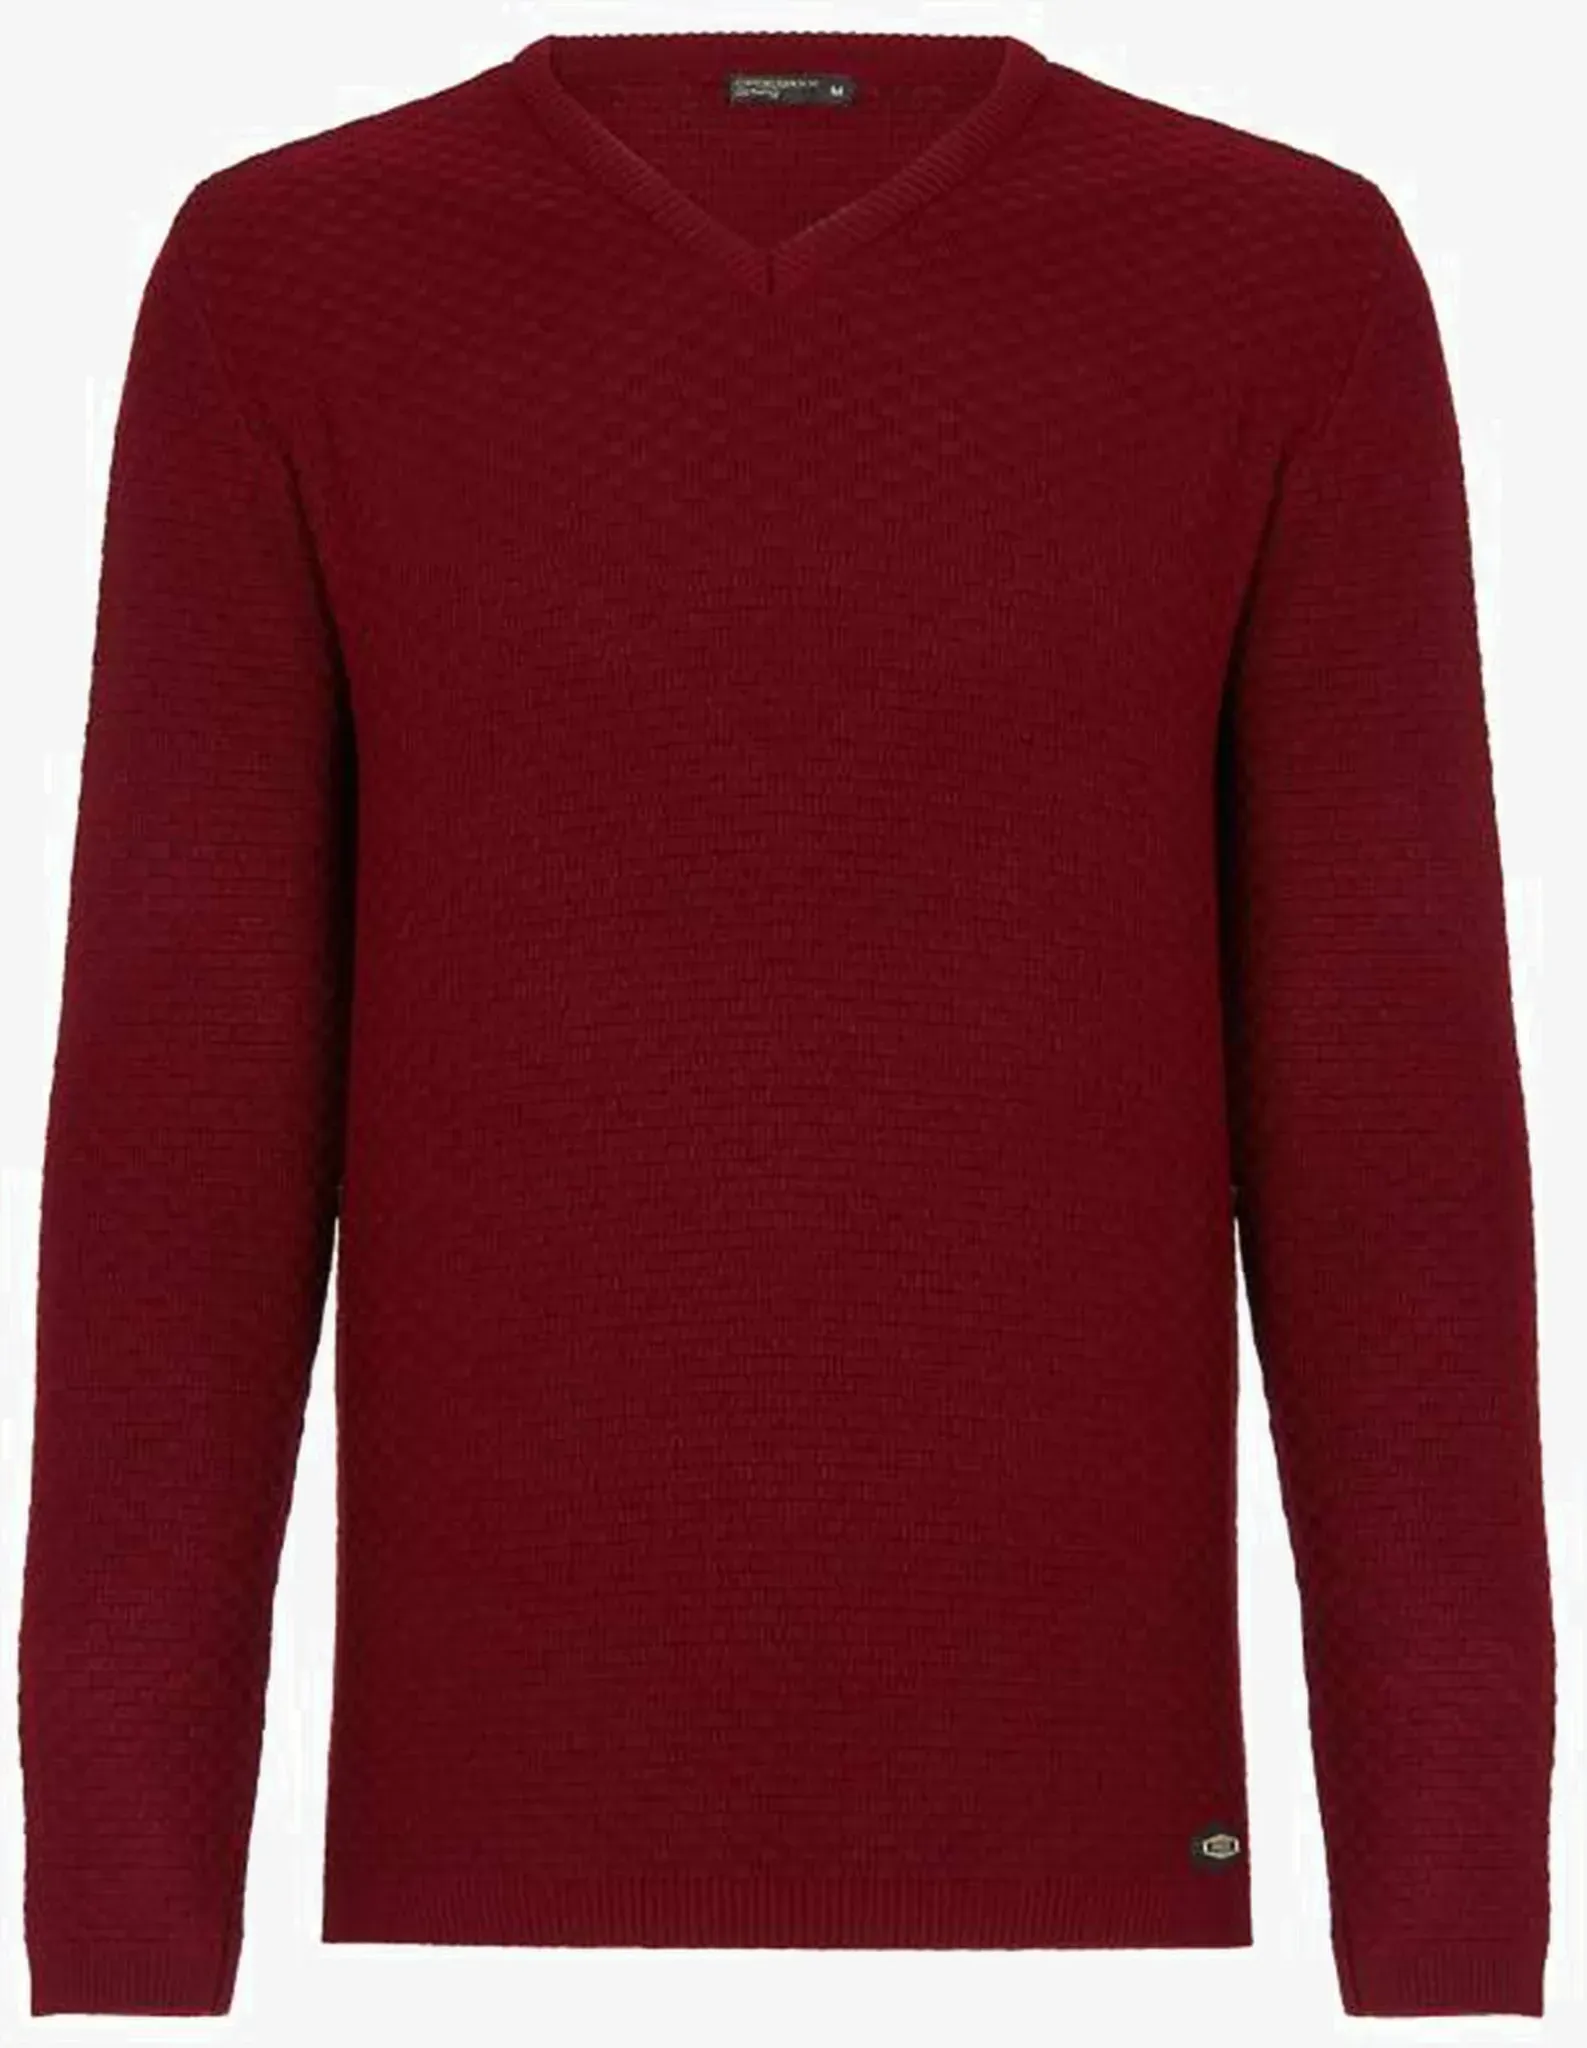 V-Ausschnitt-Pullover CIPO & BAXX Gr. XL, rot Herren Pullover V-Ausschnitt-Pullover mit modischem V-Ausschnitt